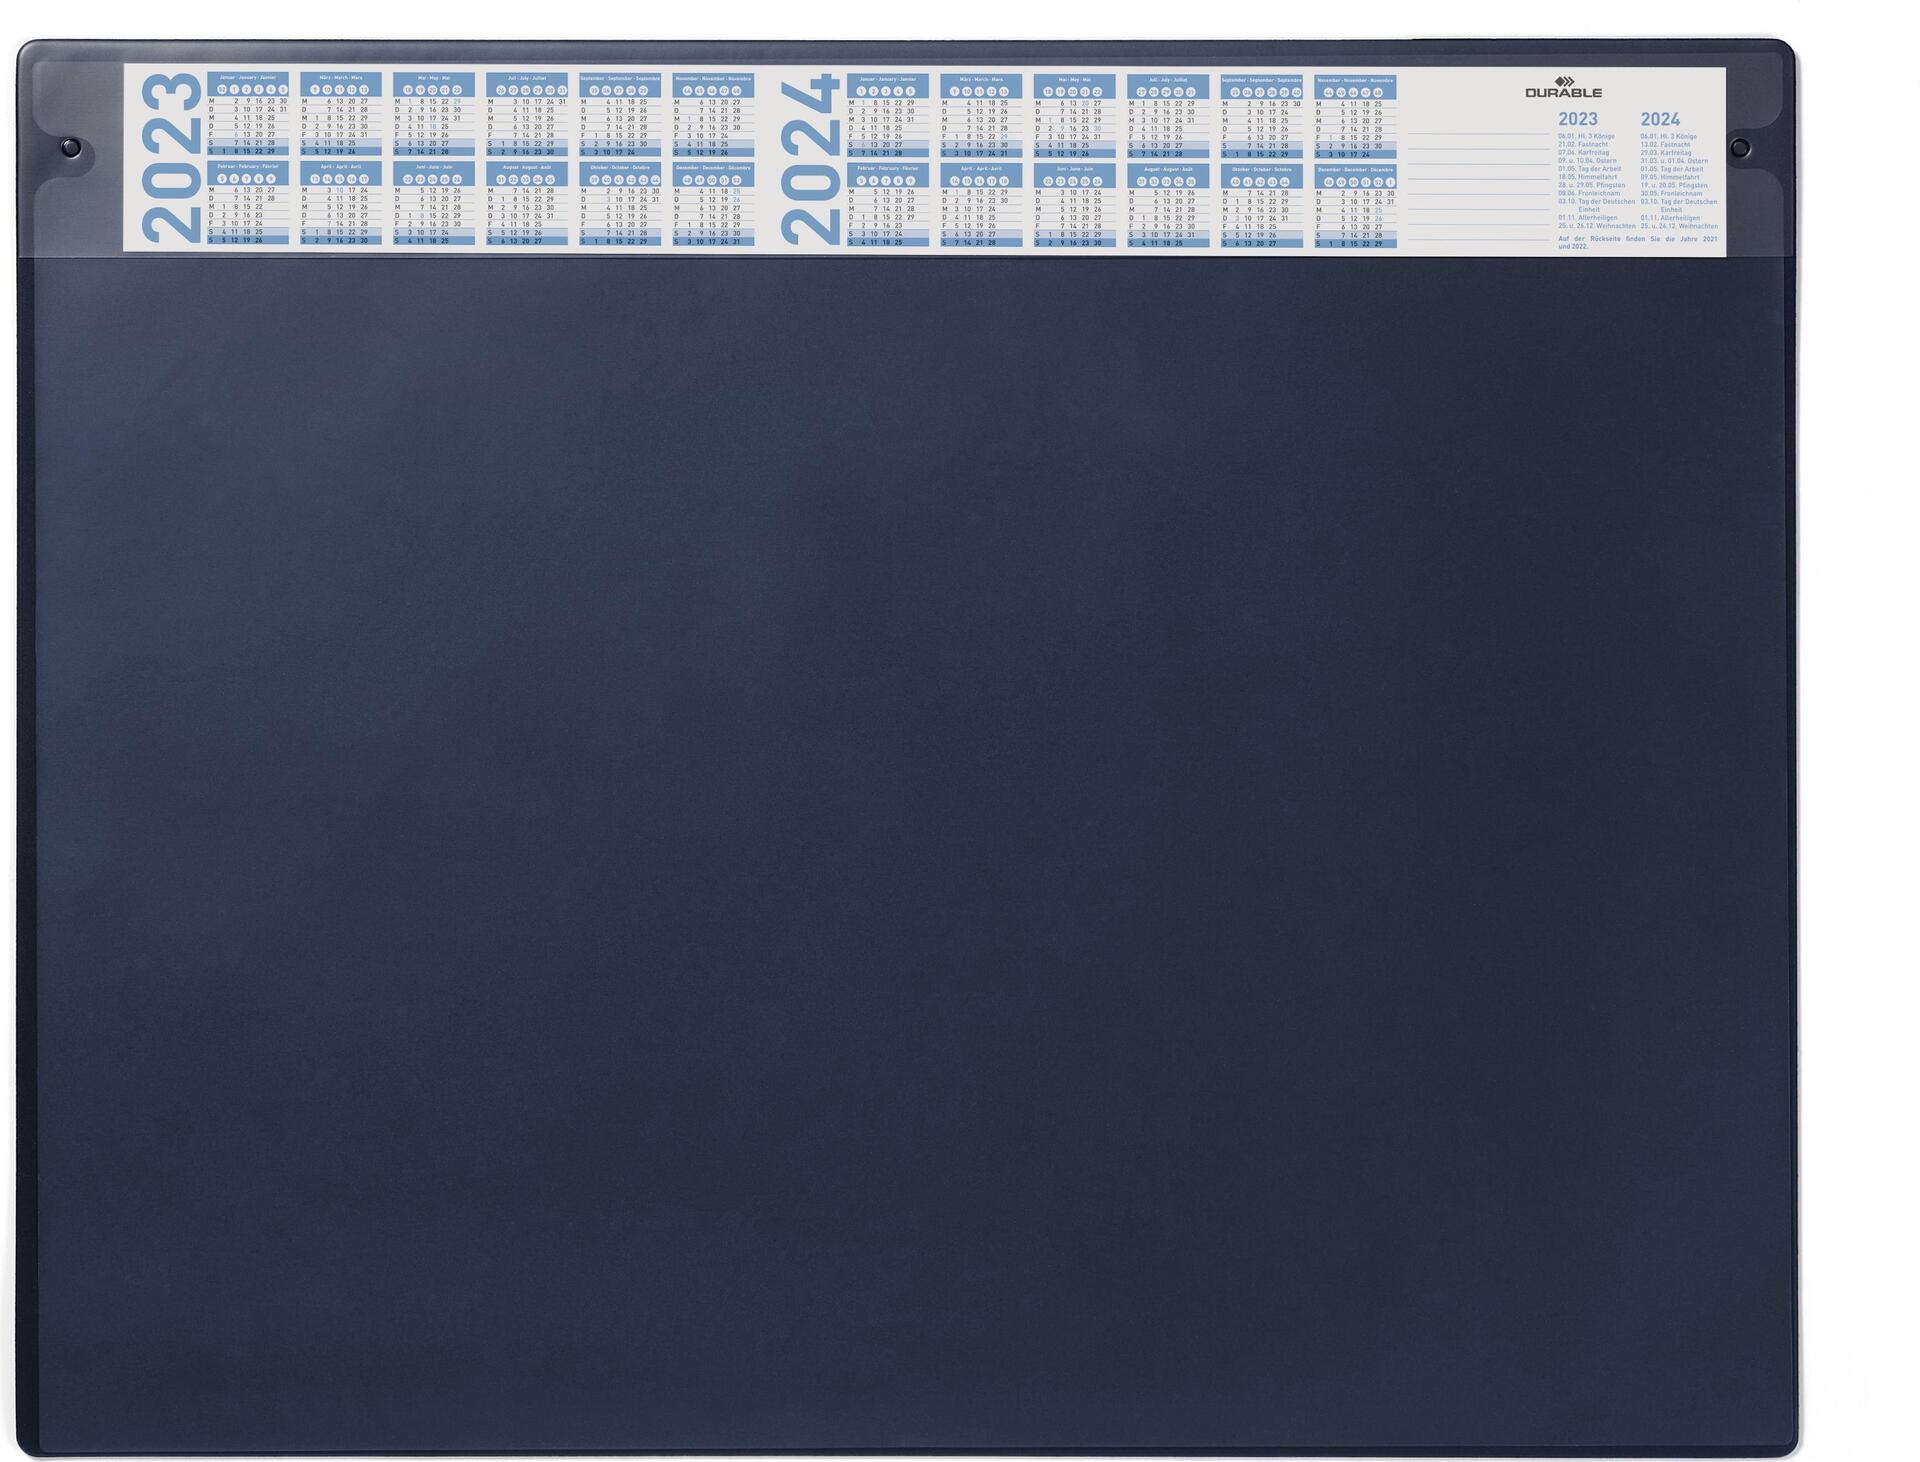 DURABLE Schreibunterlage mit Jahreskalender, dunkelblau mit austauschbarer Abdeckung, rutschfest (72